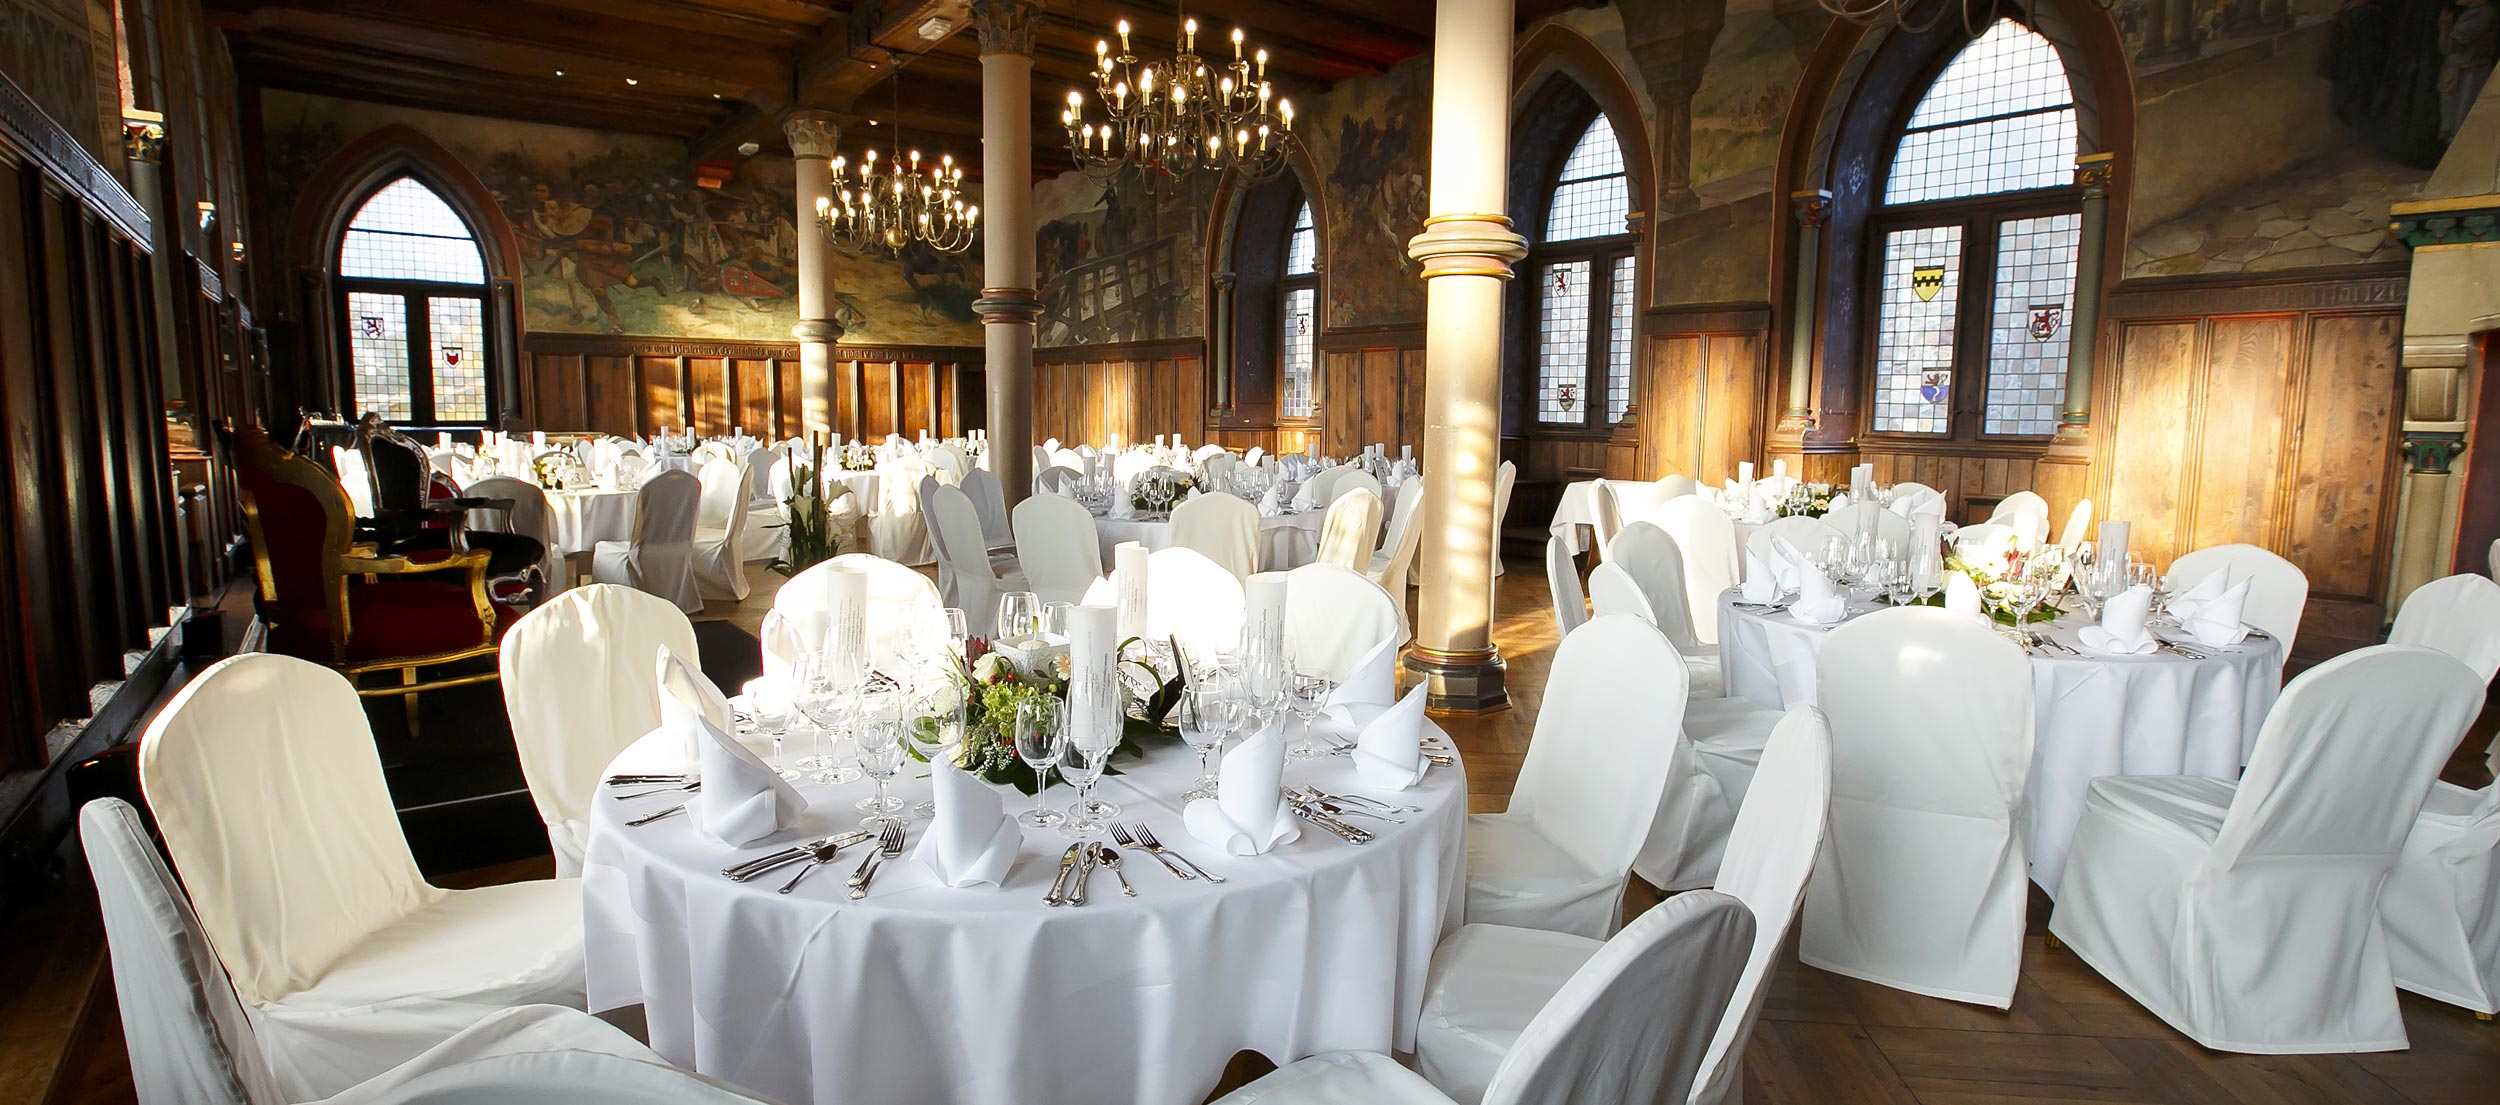 Der festlich dekorierte Rittersaal auf Schloss Burg.